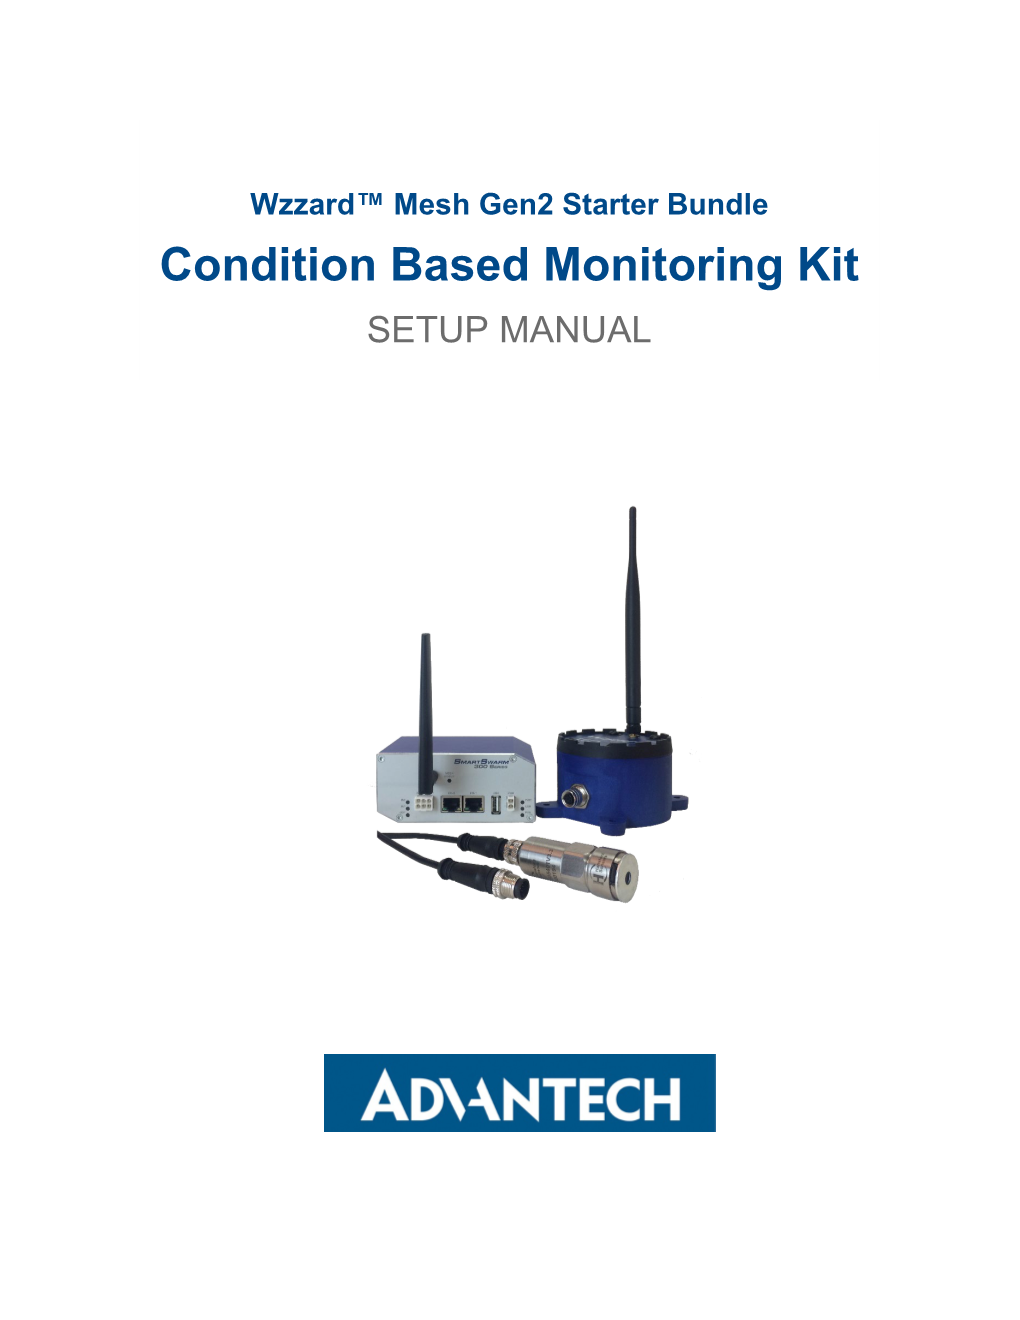 Wzzard™ Mesh Gen2 Starter Bundle Condition Based Monitoring Kit SETUP MANUAL